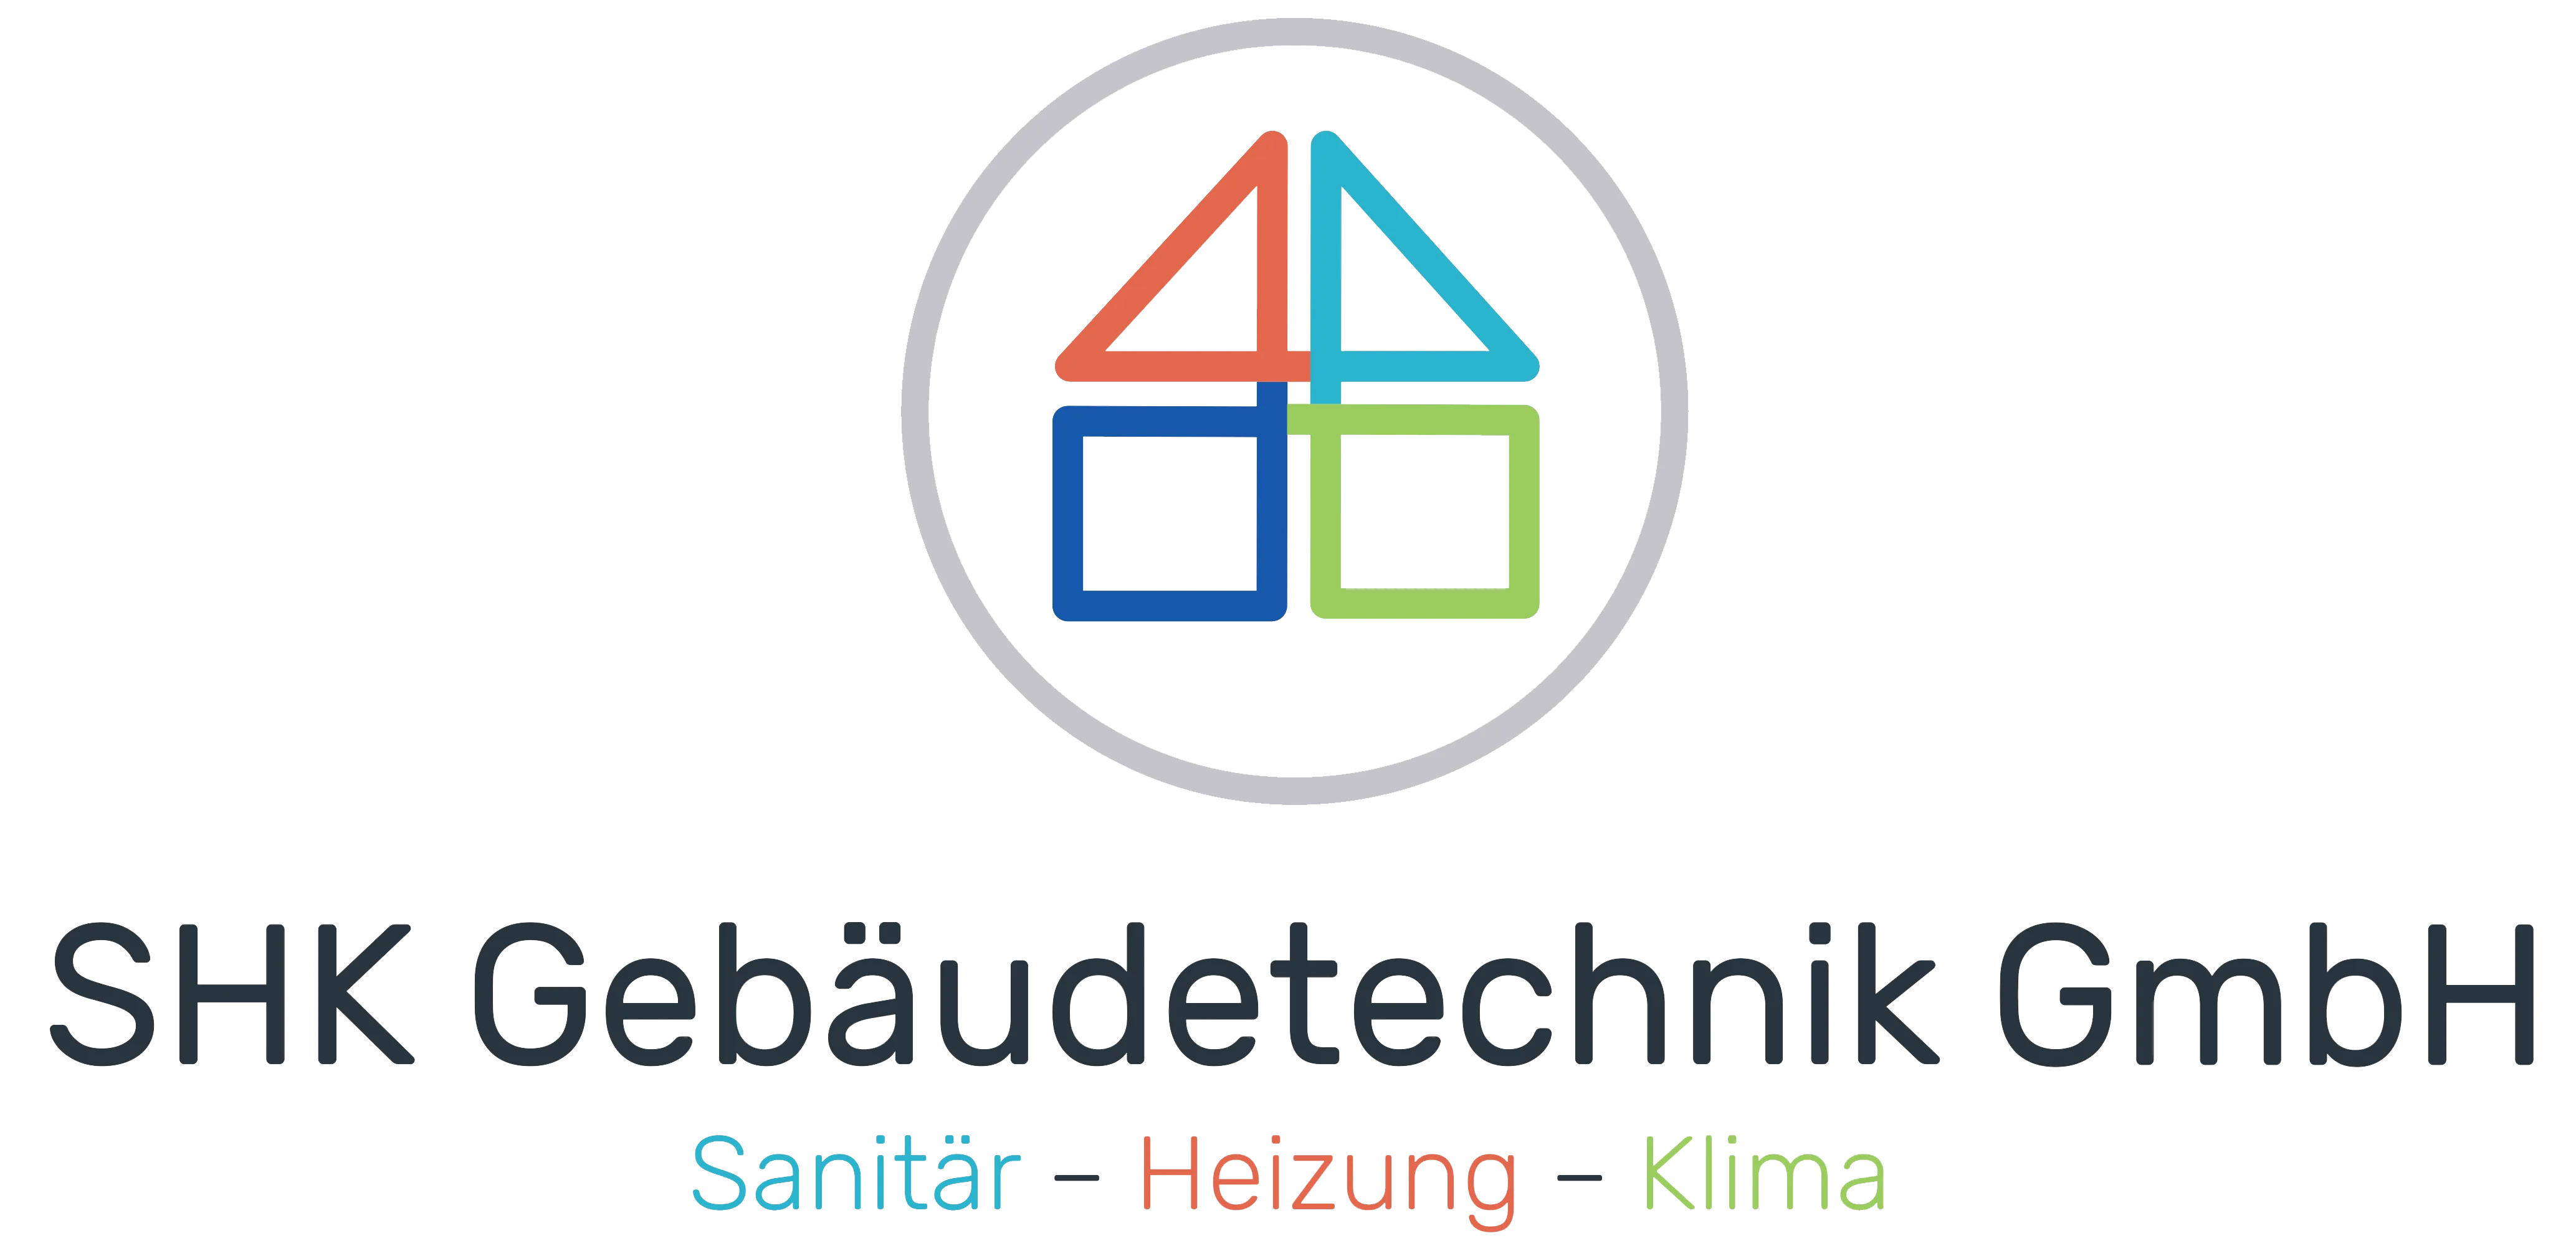 SHK-GebÃ¤udetechnik GmbH Logo ohne Hintergrund.png